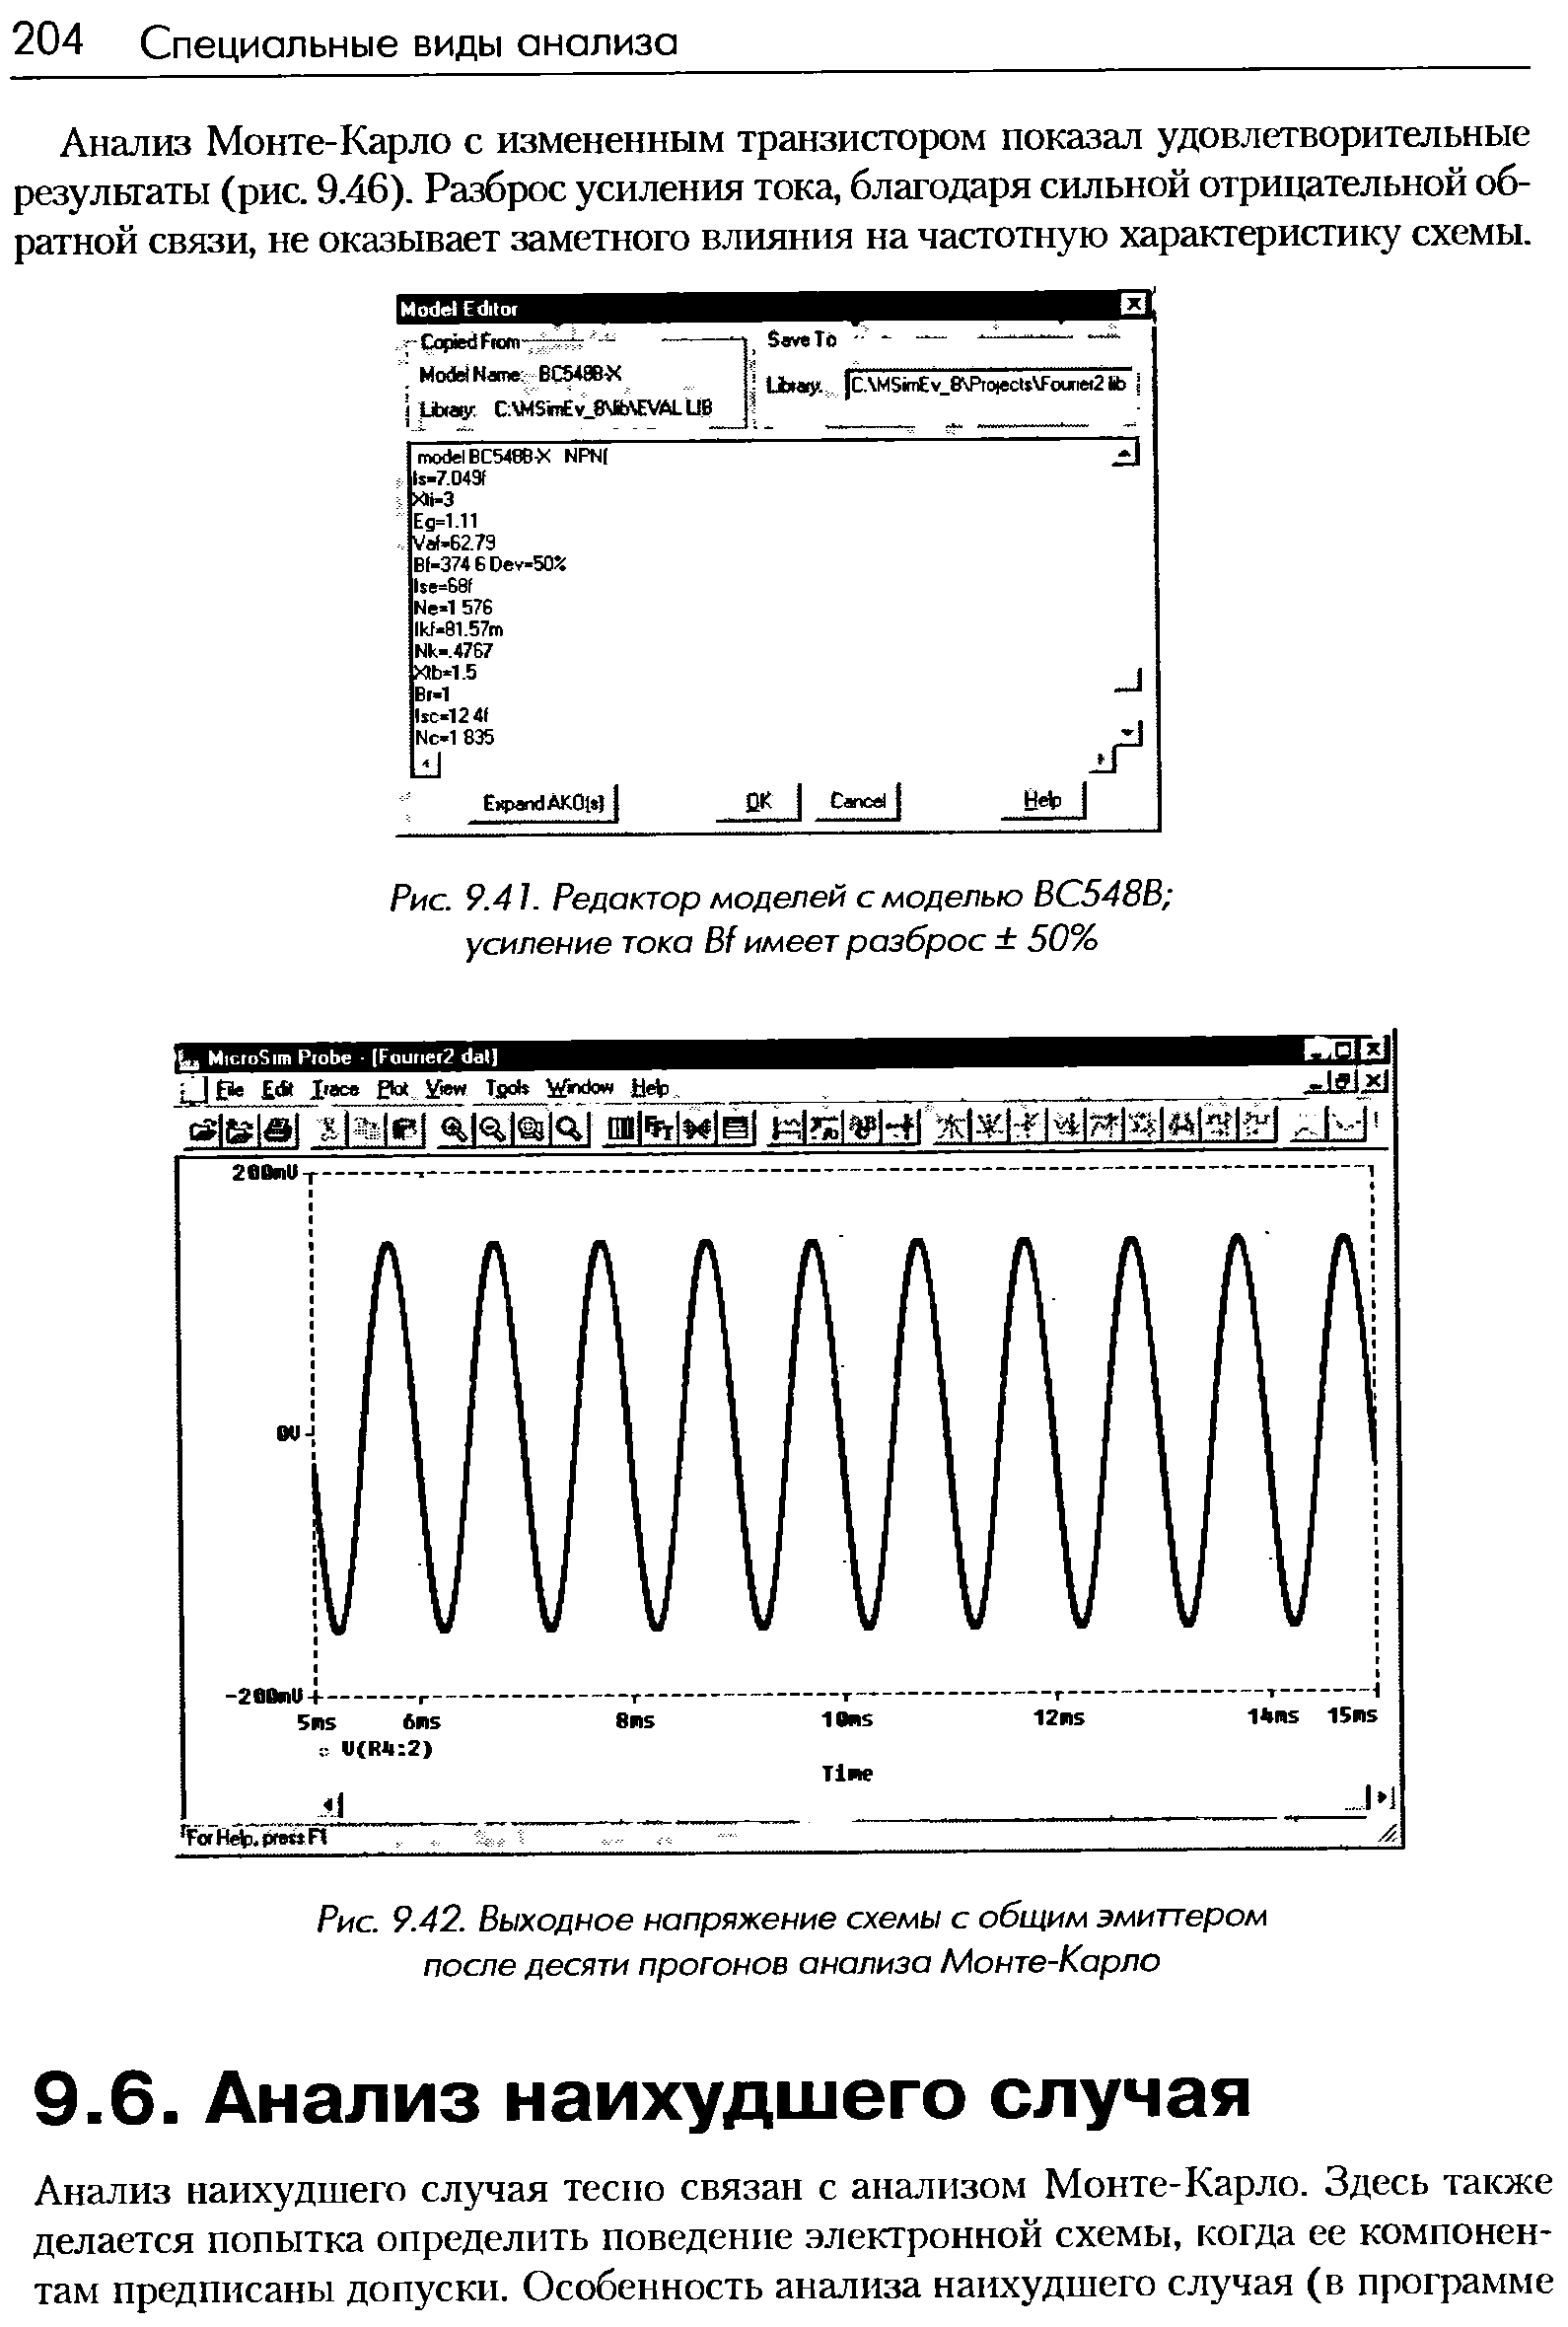 Рис. 9.42. Выходное <a href="/info/450987">напряжение схемы</a> с общим эмиттером после десяти прогонов анализа Монте-Карло
